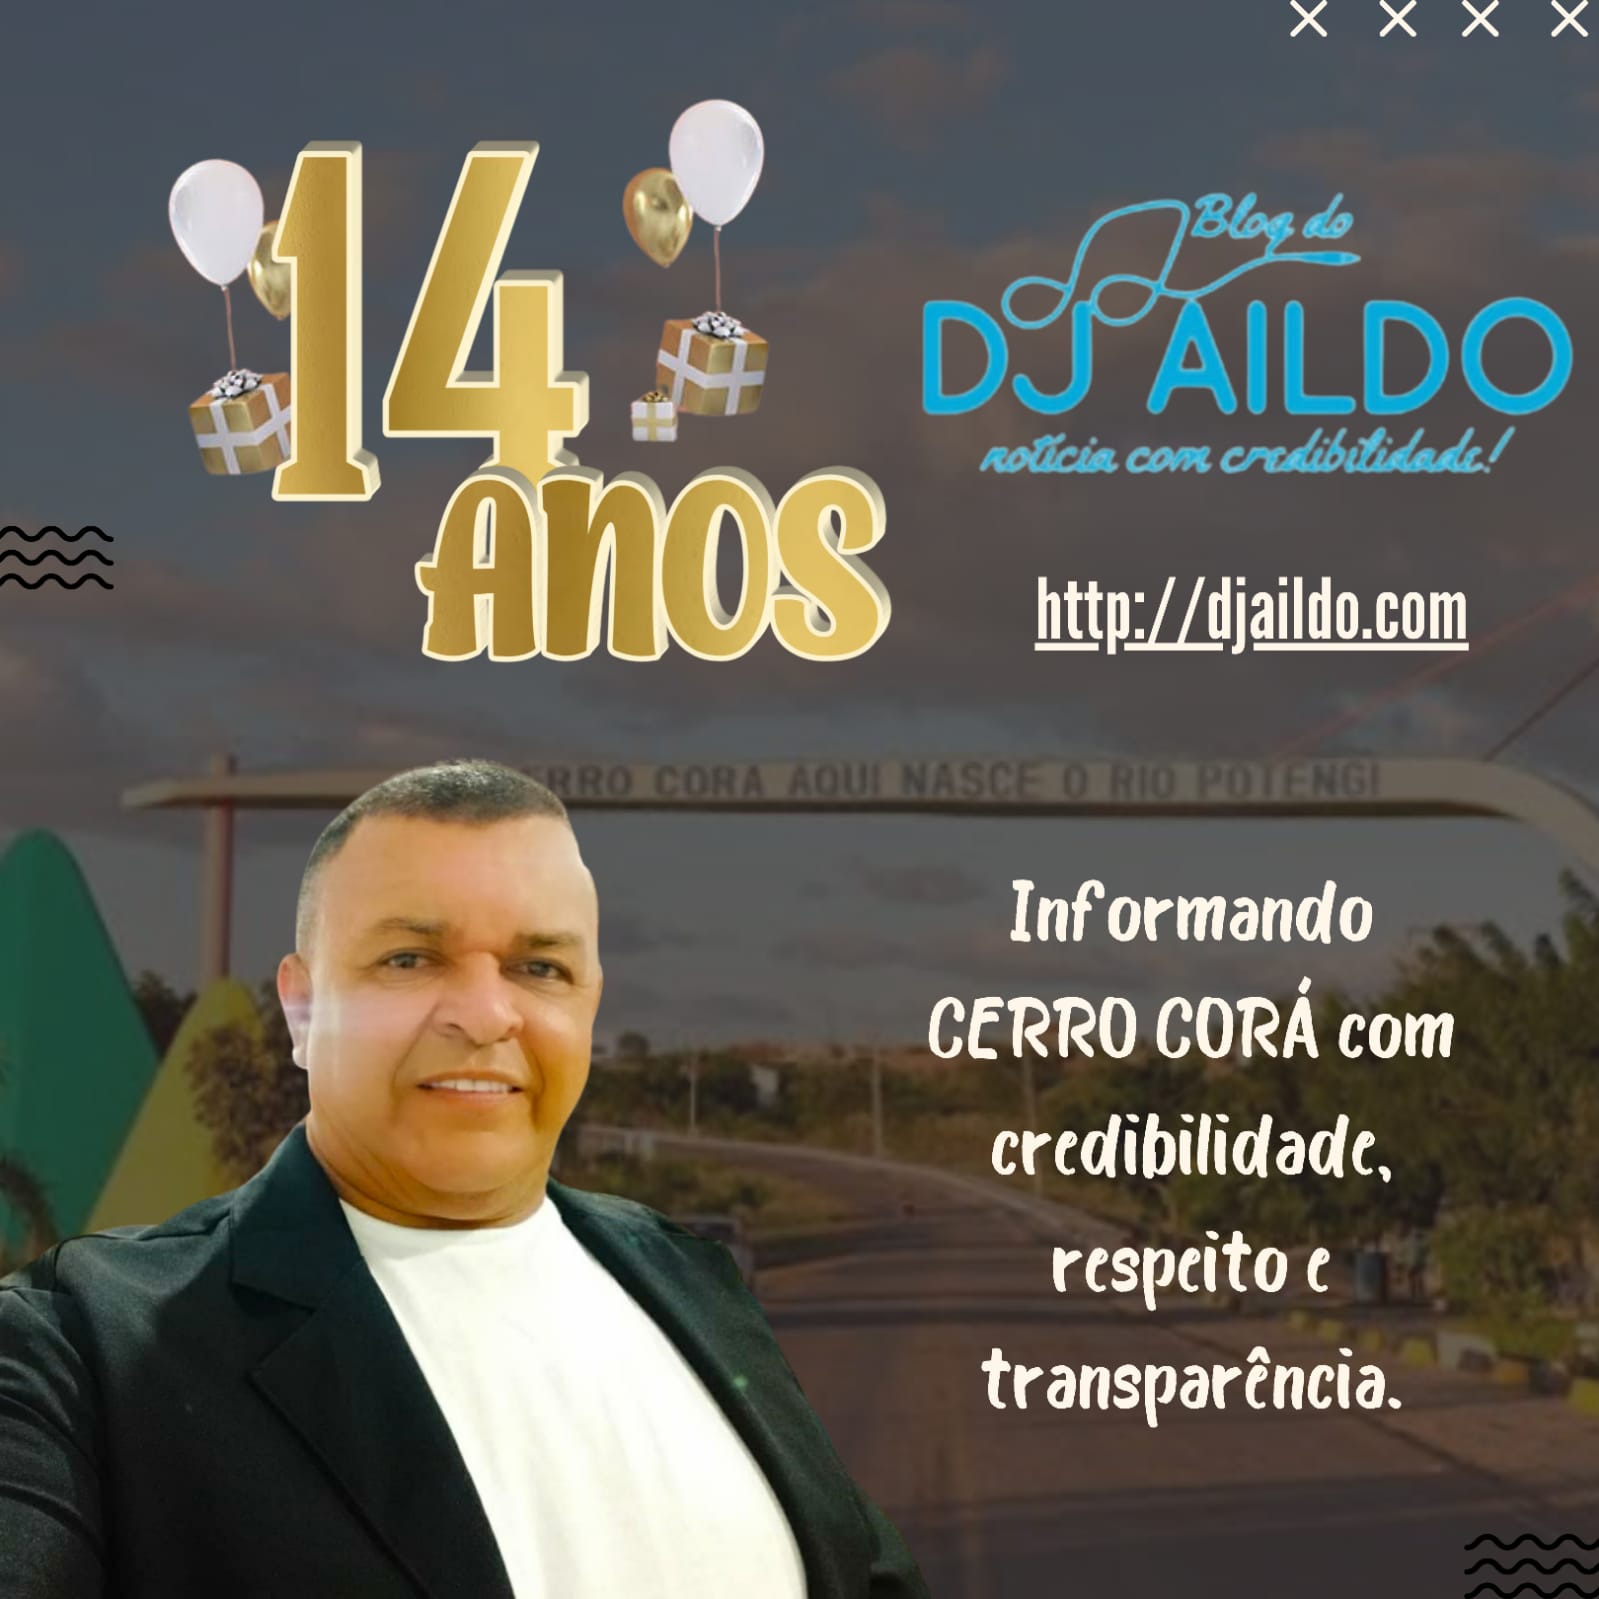 BLOG DJ AILDO COMPLETA SEUS 14 ANOS DE COMUNICAÇÃO